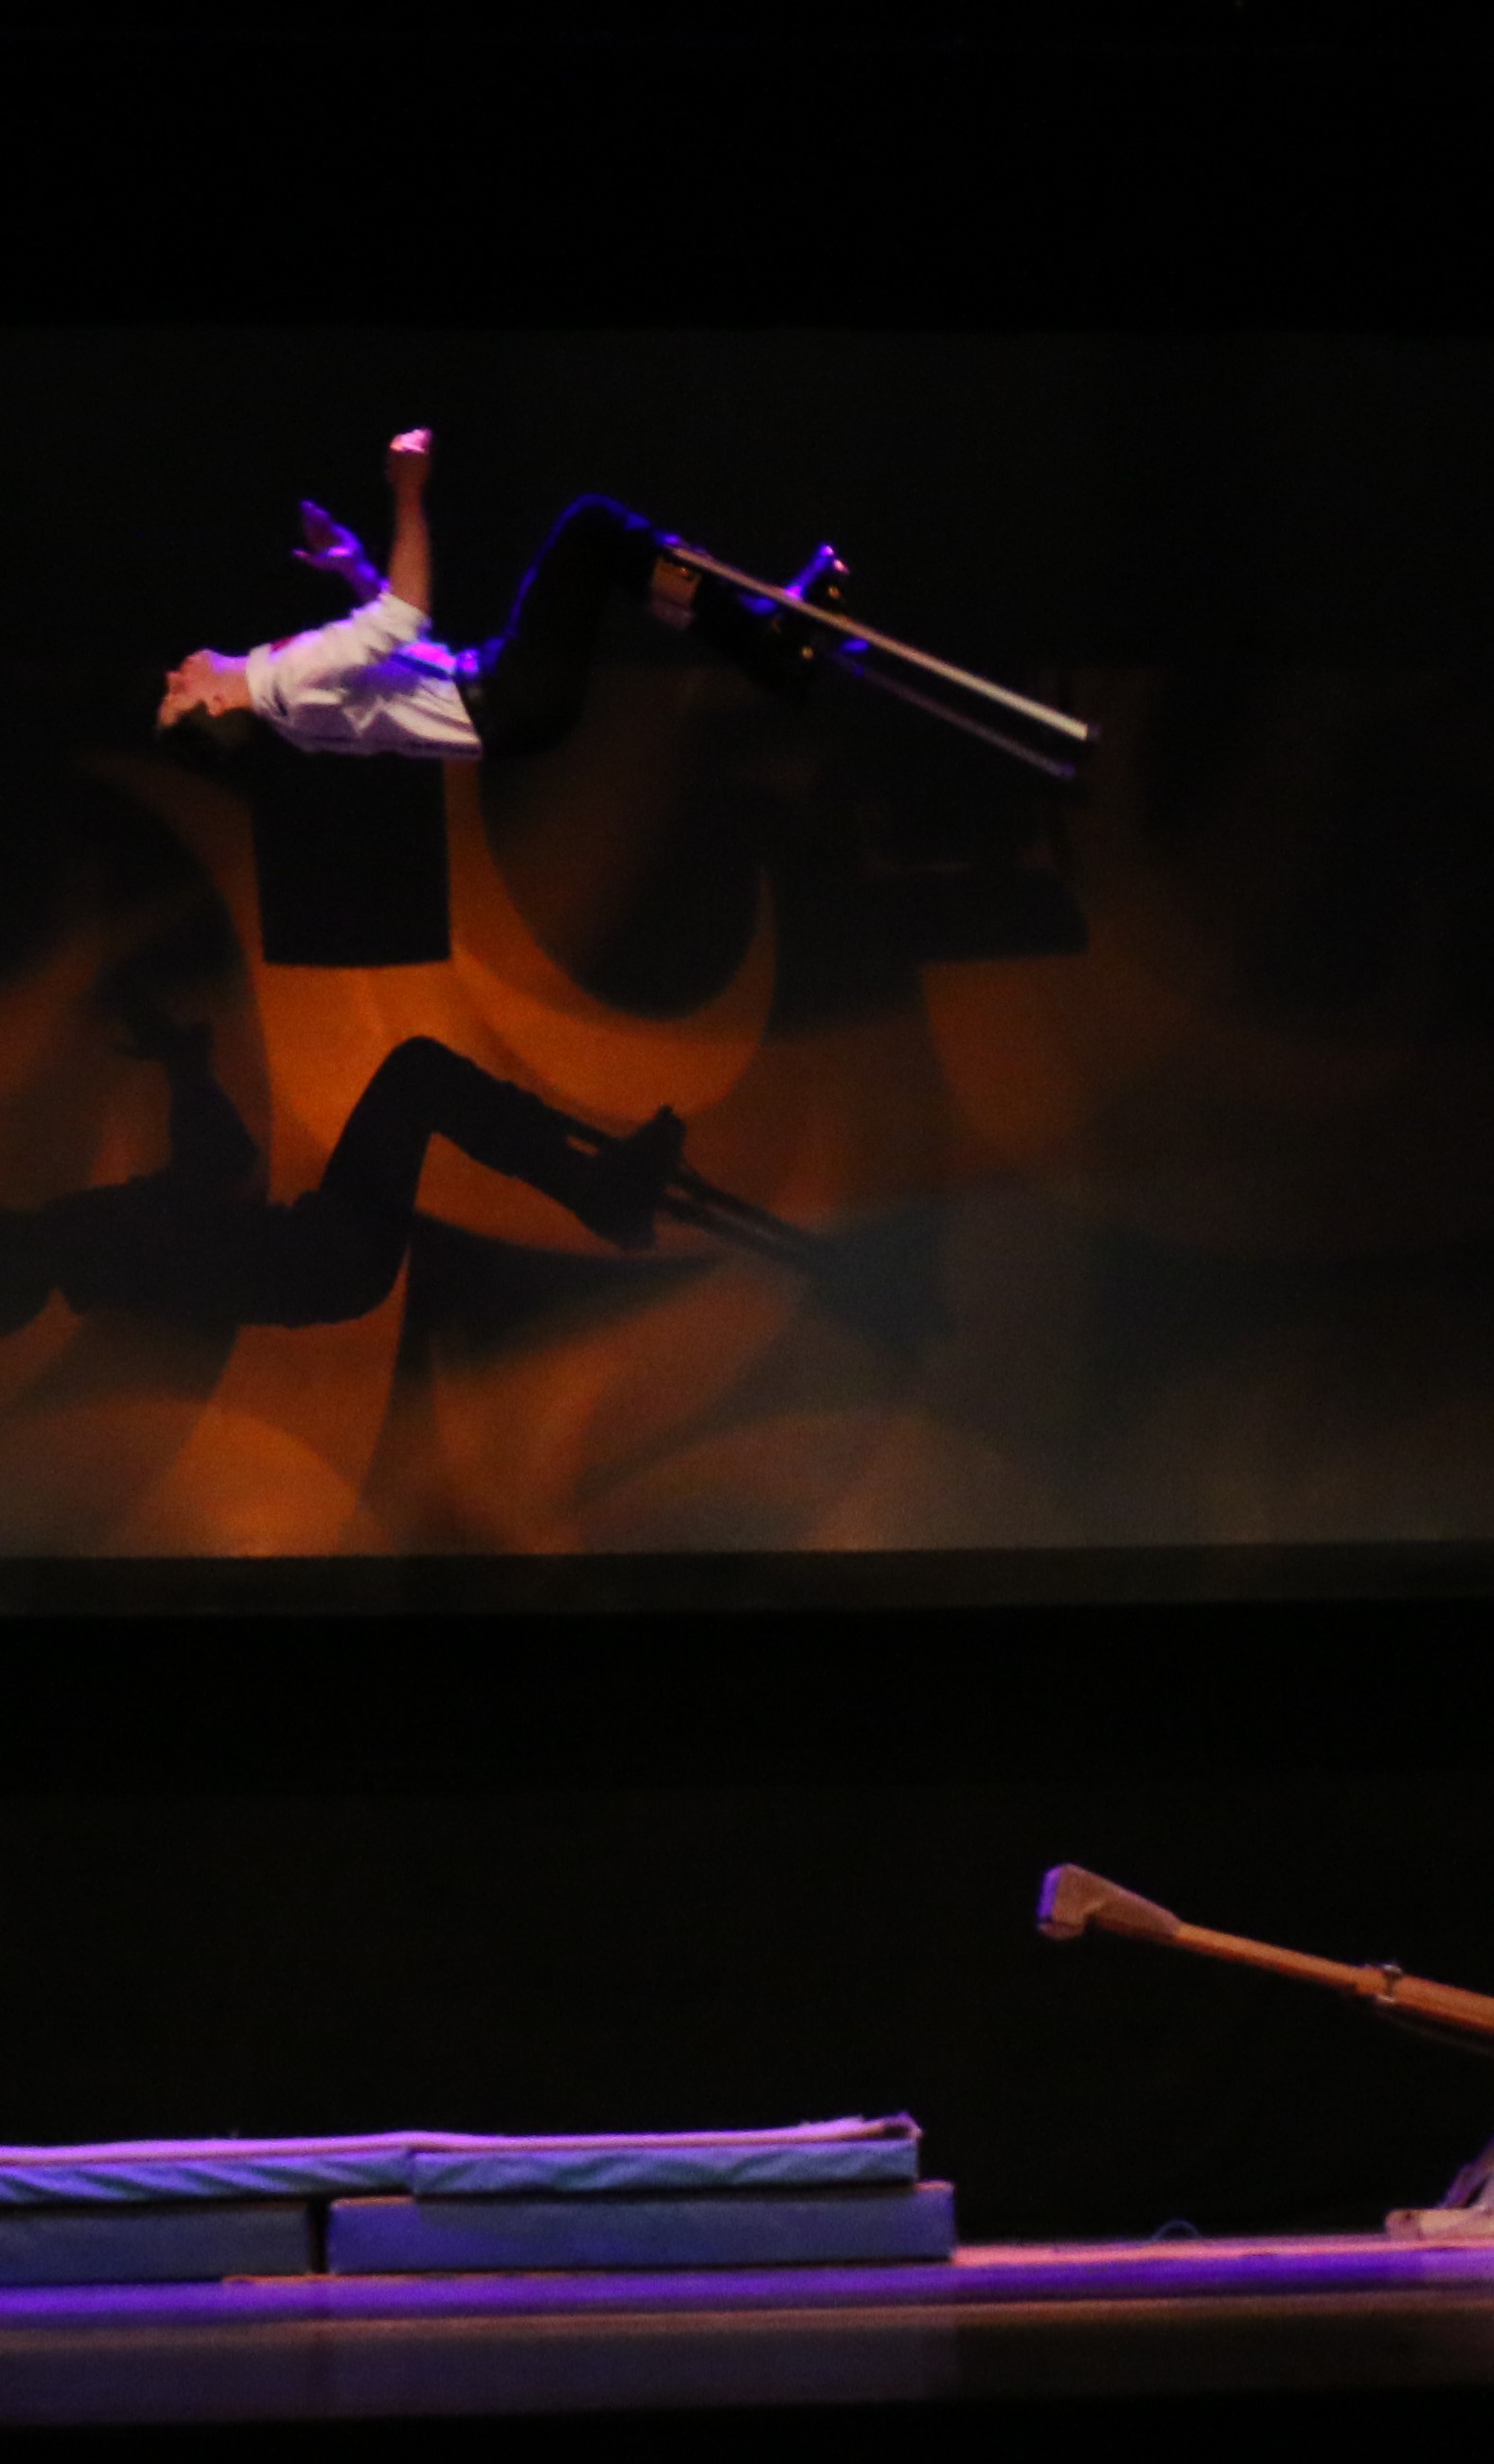 Artist Moritz zeigt Salto mit Stelzen für Varieté